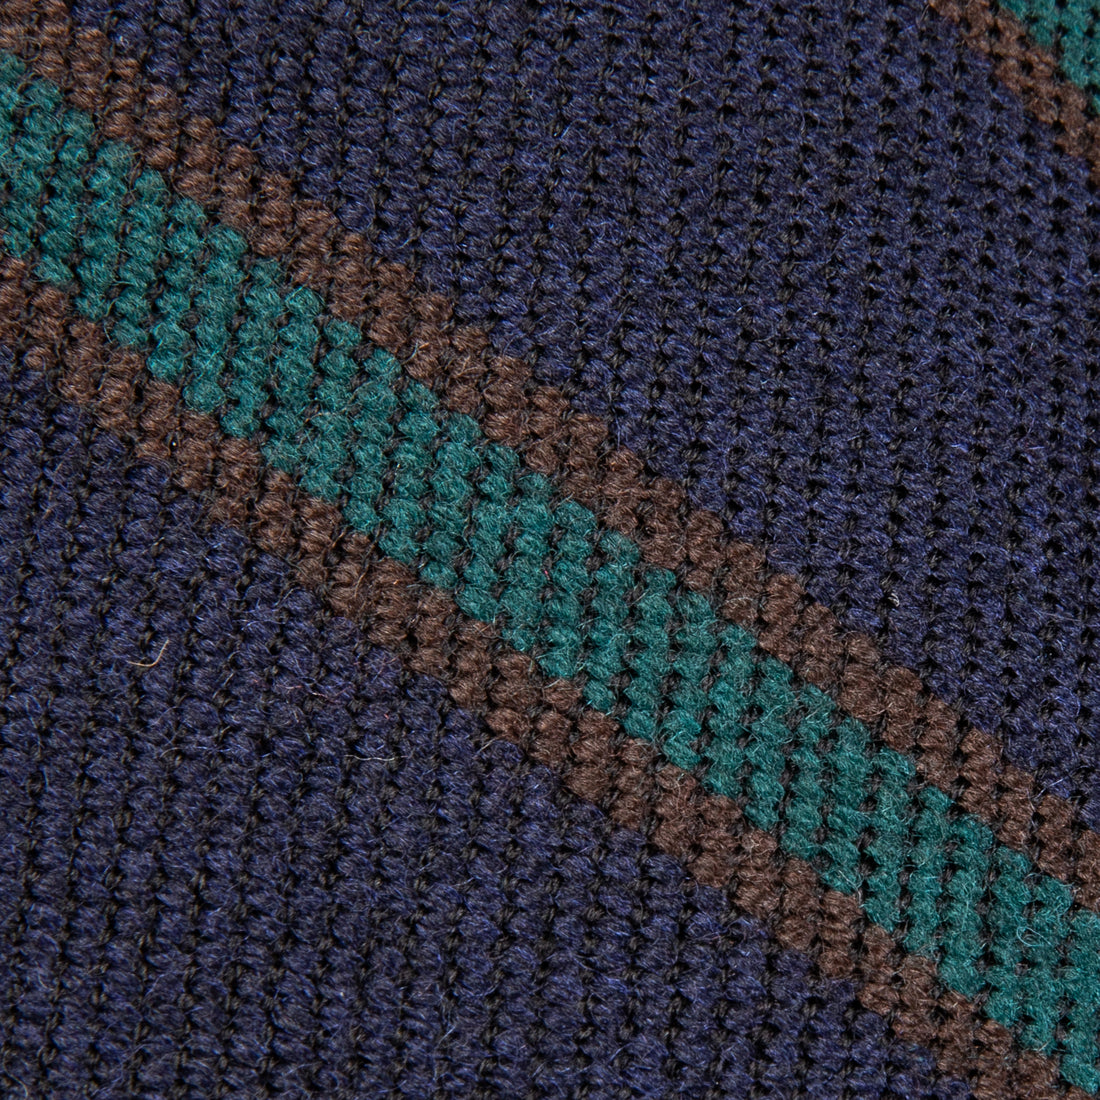 Finamore Anversa Tie Untipped Basket Weave Stripe Navy Green